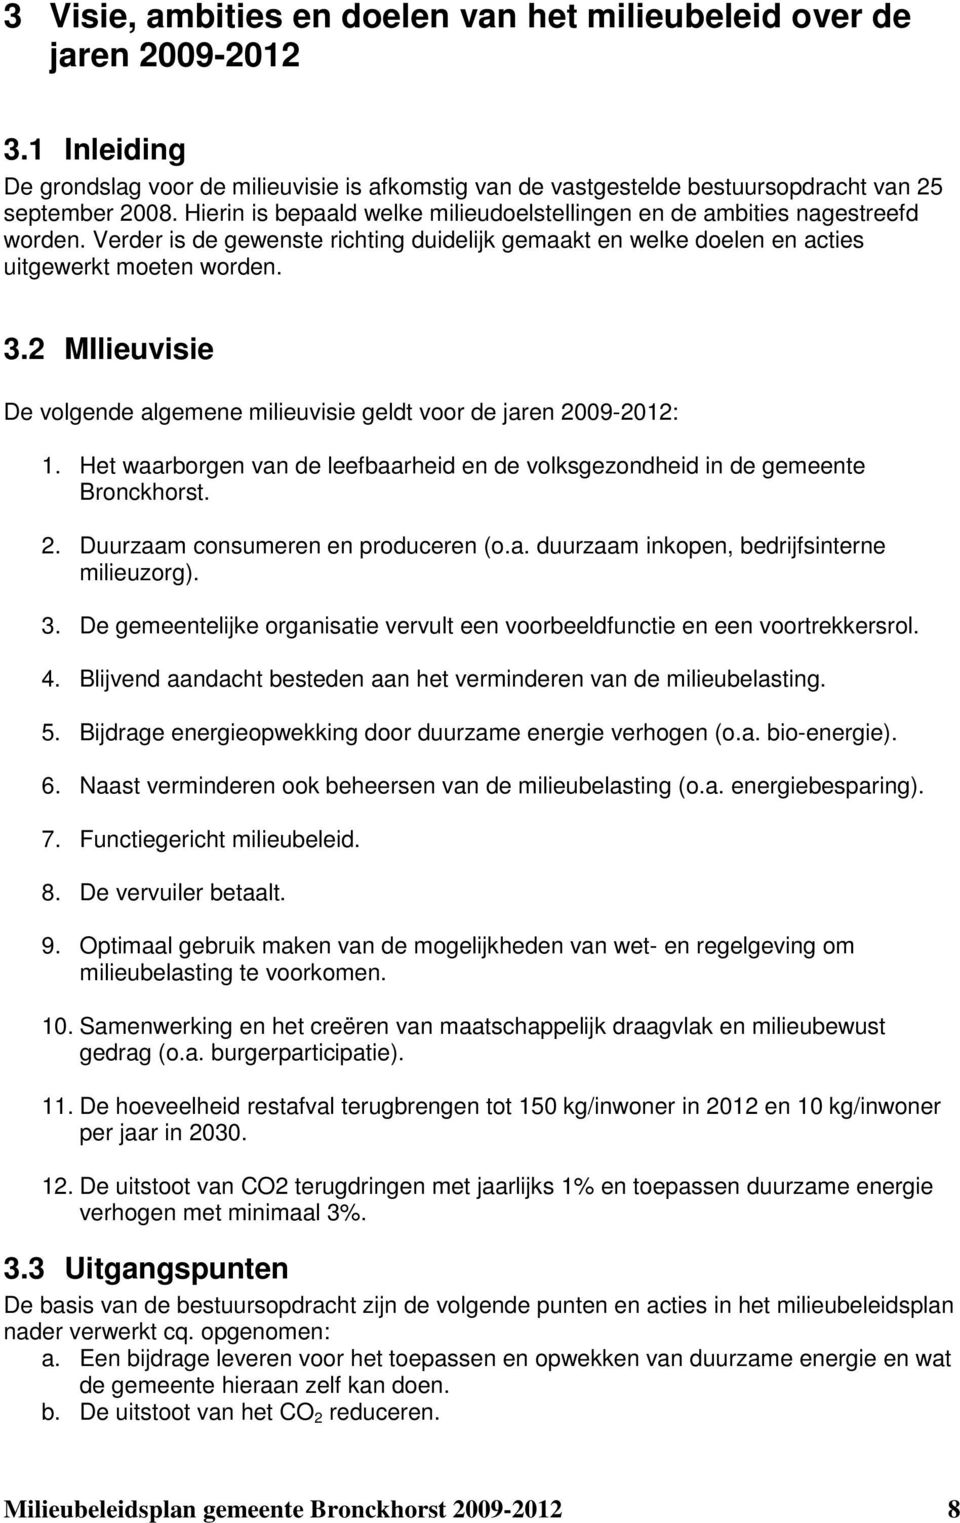 2 MIlieuvisie De volgende algemene milieuvisie geldt voor de jaren 2009-2012: 1. Het waarborgen van de leefbaarheid en de volksgezondheid in de gemeente Bronckhorst. 2. Duurzaam consumeren en produceren (o.